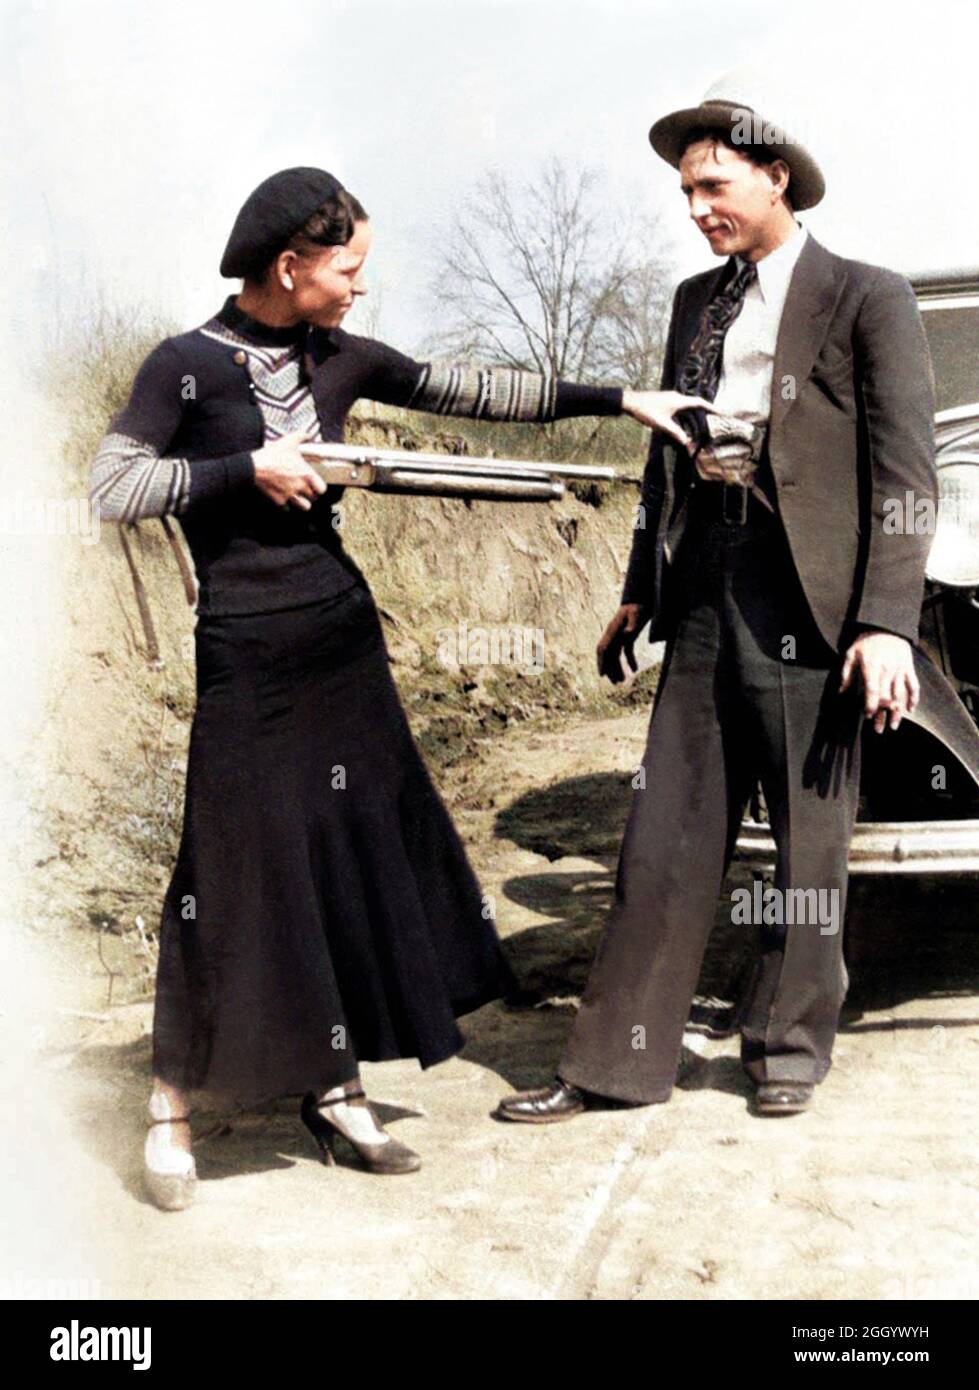 1934 , Arkansas , USA : les célèbres gangsterns BONNIE PARKER ( 1910 - 1934 ) et CLYDE BARROW ( 1909 - 1934 ). Contrairement à la croyance populaire, les deux n'ont jamais épousé. Ils étaient dans une relation de longue date. Posant devant une automobile Ford V8 1932 où Bonnie et Clyde sont morts le 23 mai 1934 . Photographe inconnu . COLORISÉ NUMÉRIQUEMENT . - HORS-LA-LOI - KILLER - ASSASSINO - délinquant - criminalità organizata - GANGSTERN - Bos - CRONACA NERA - CRIMINALE - voiture - automobile - chapeau - cappello - fucile - arma - fusil - fusil - fusil - chaussures - scarpe -- Archivio GBB Banque D'Images